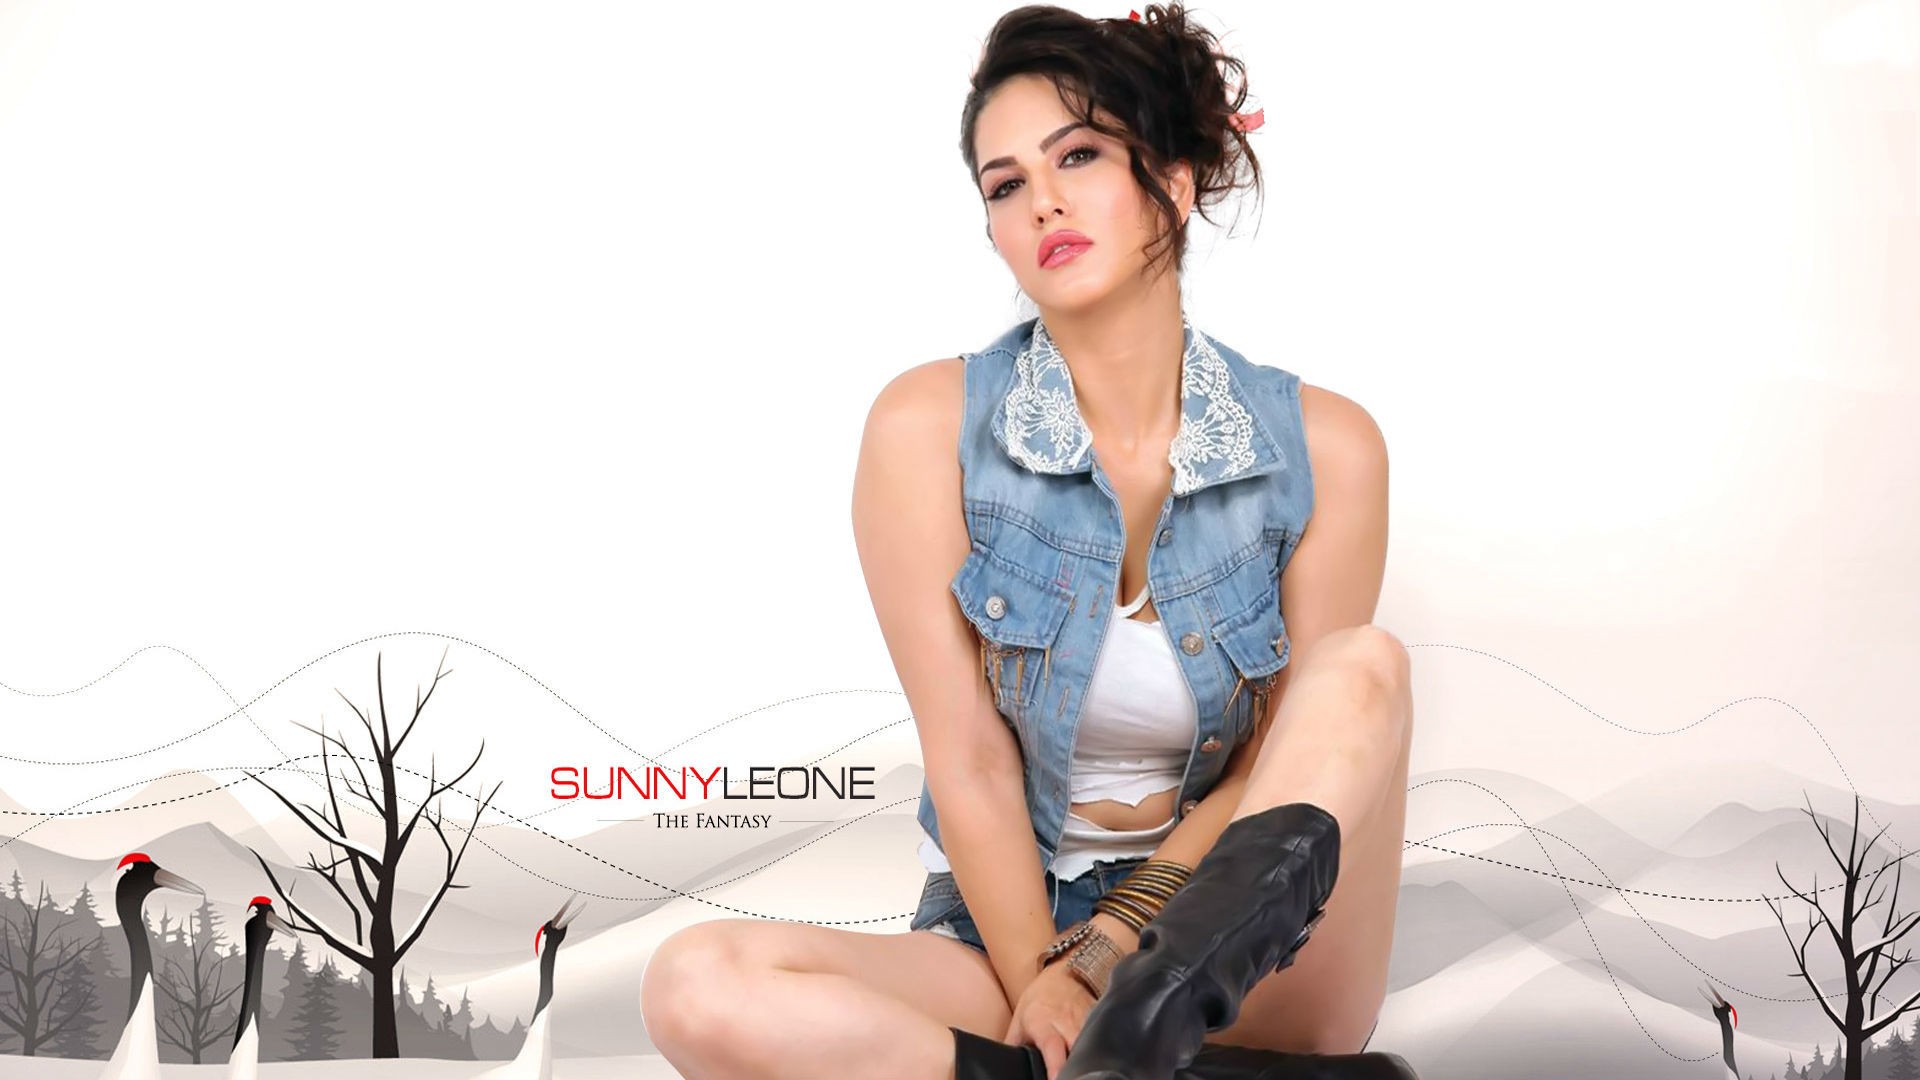 Sunny Leone 2015 Desktop HD Wallpaper - DreamLoveWallpapers